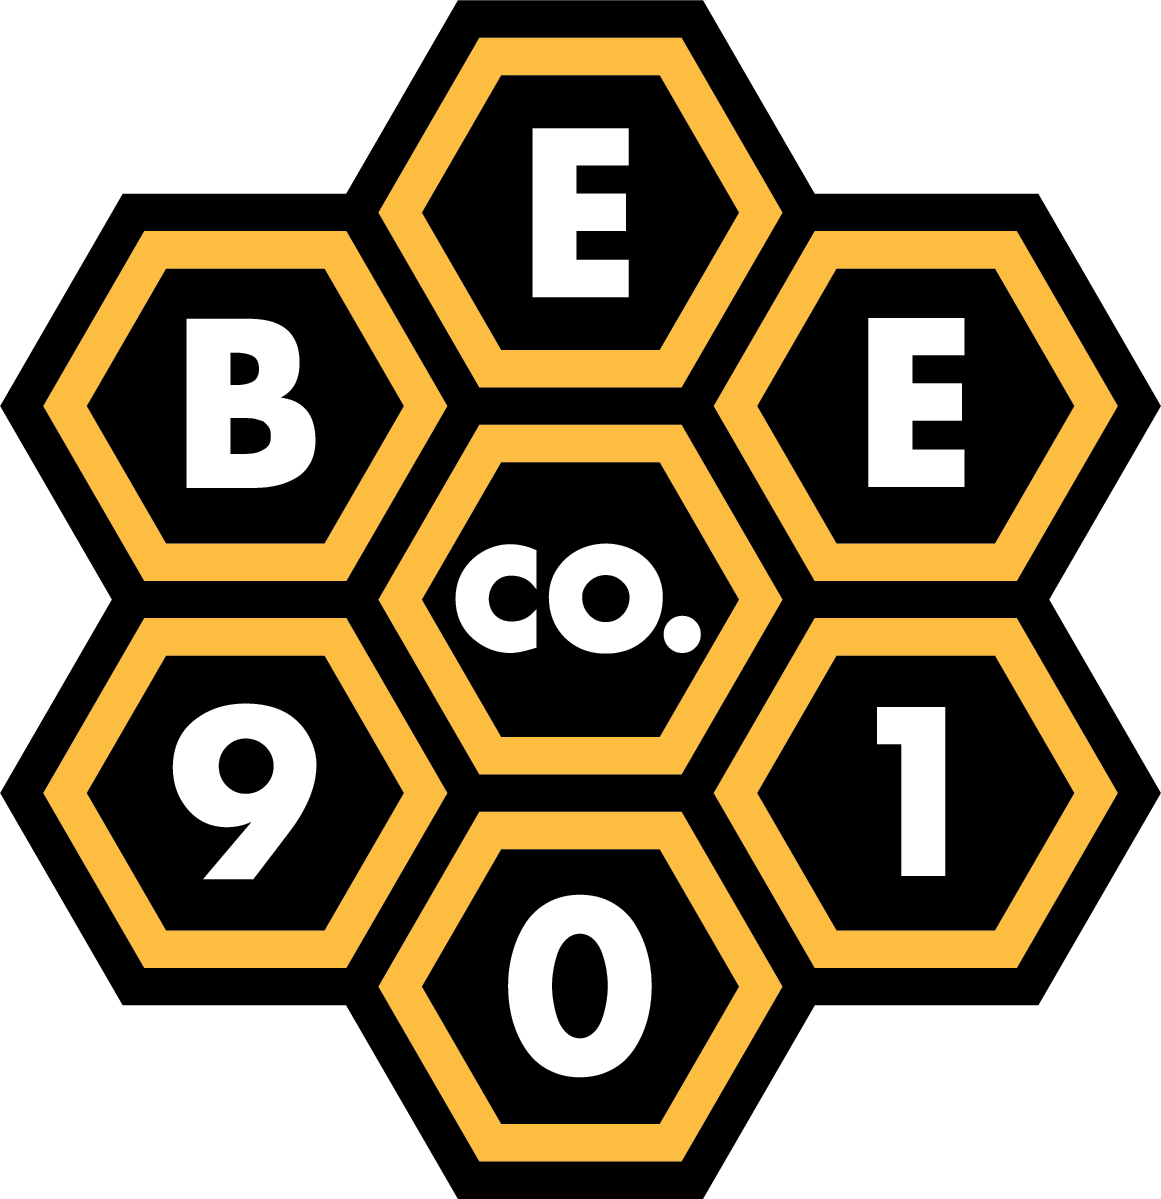 Bee 901 Co.